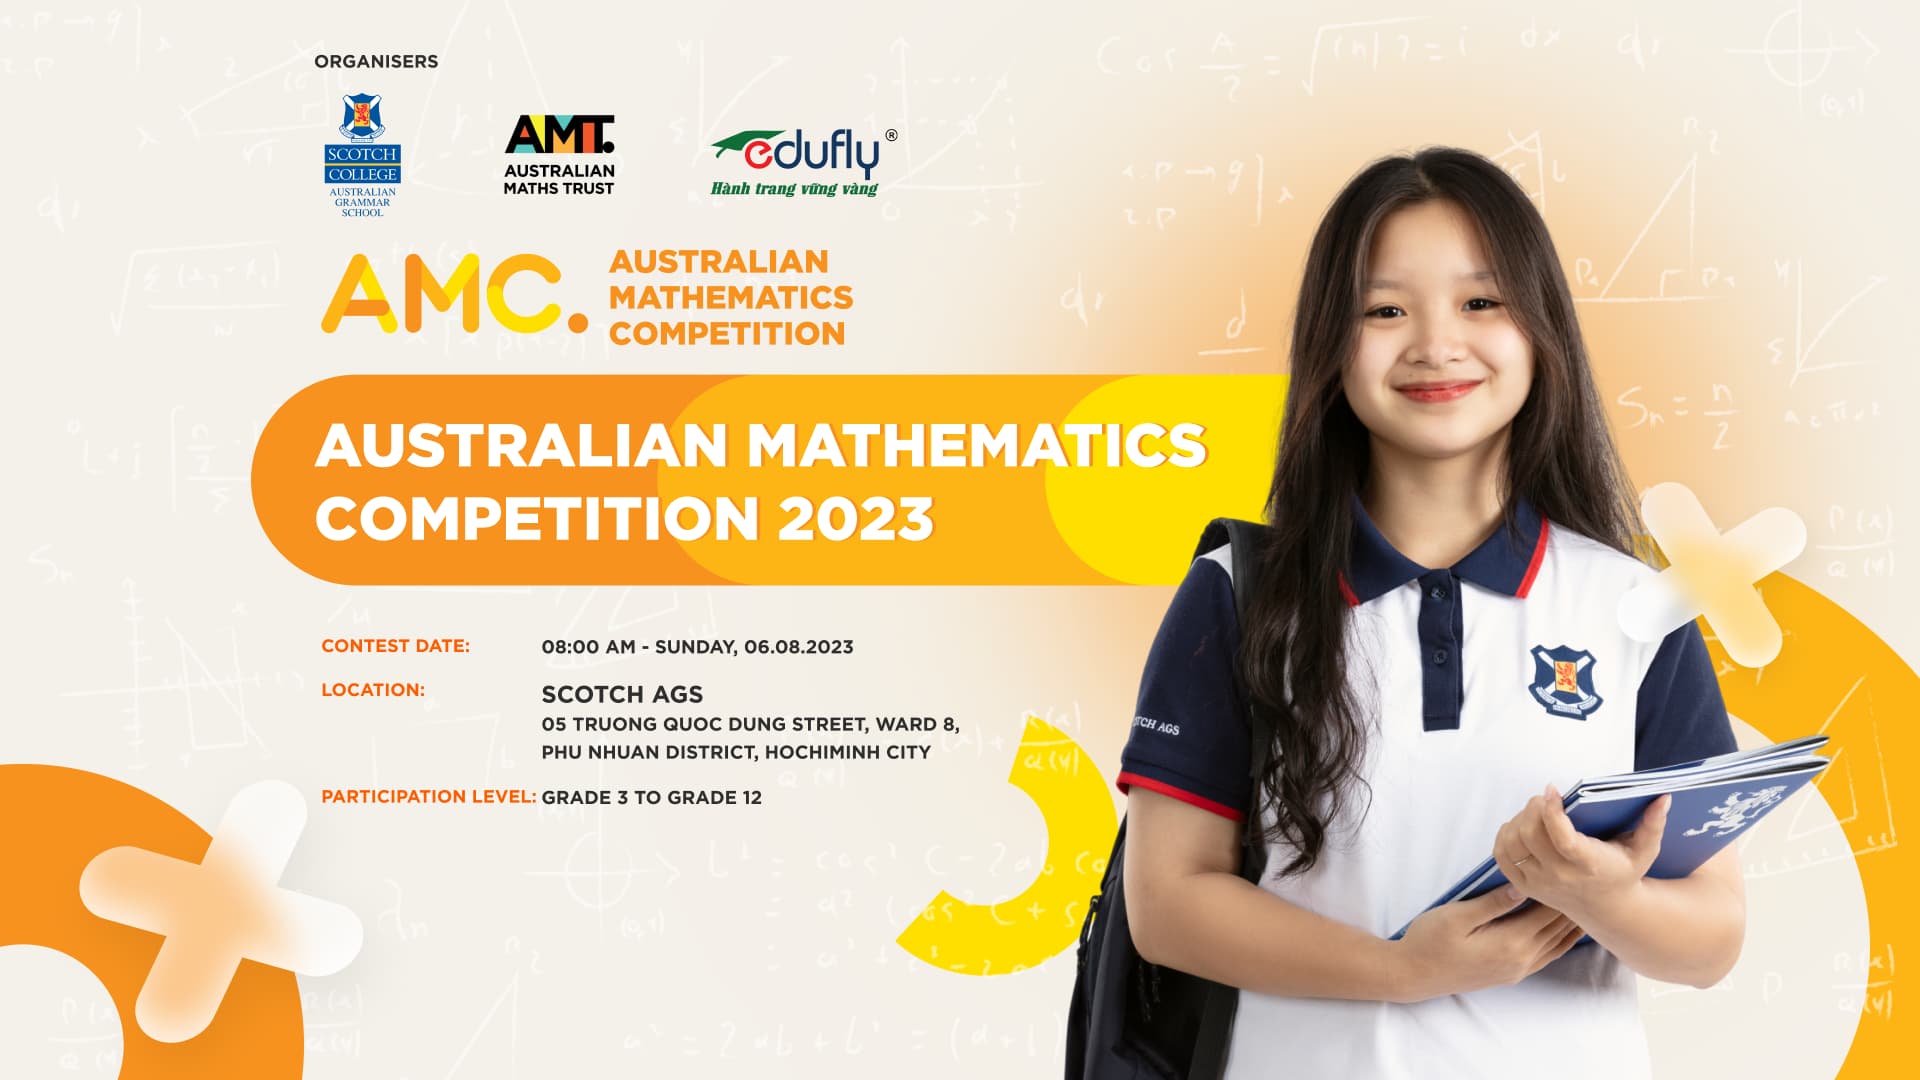 Australian Mathematics Competition 2023 International Mathematics